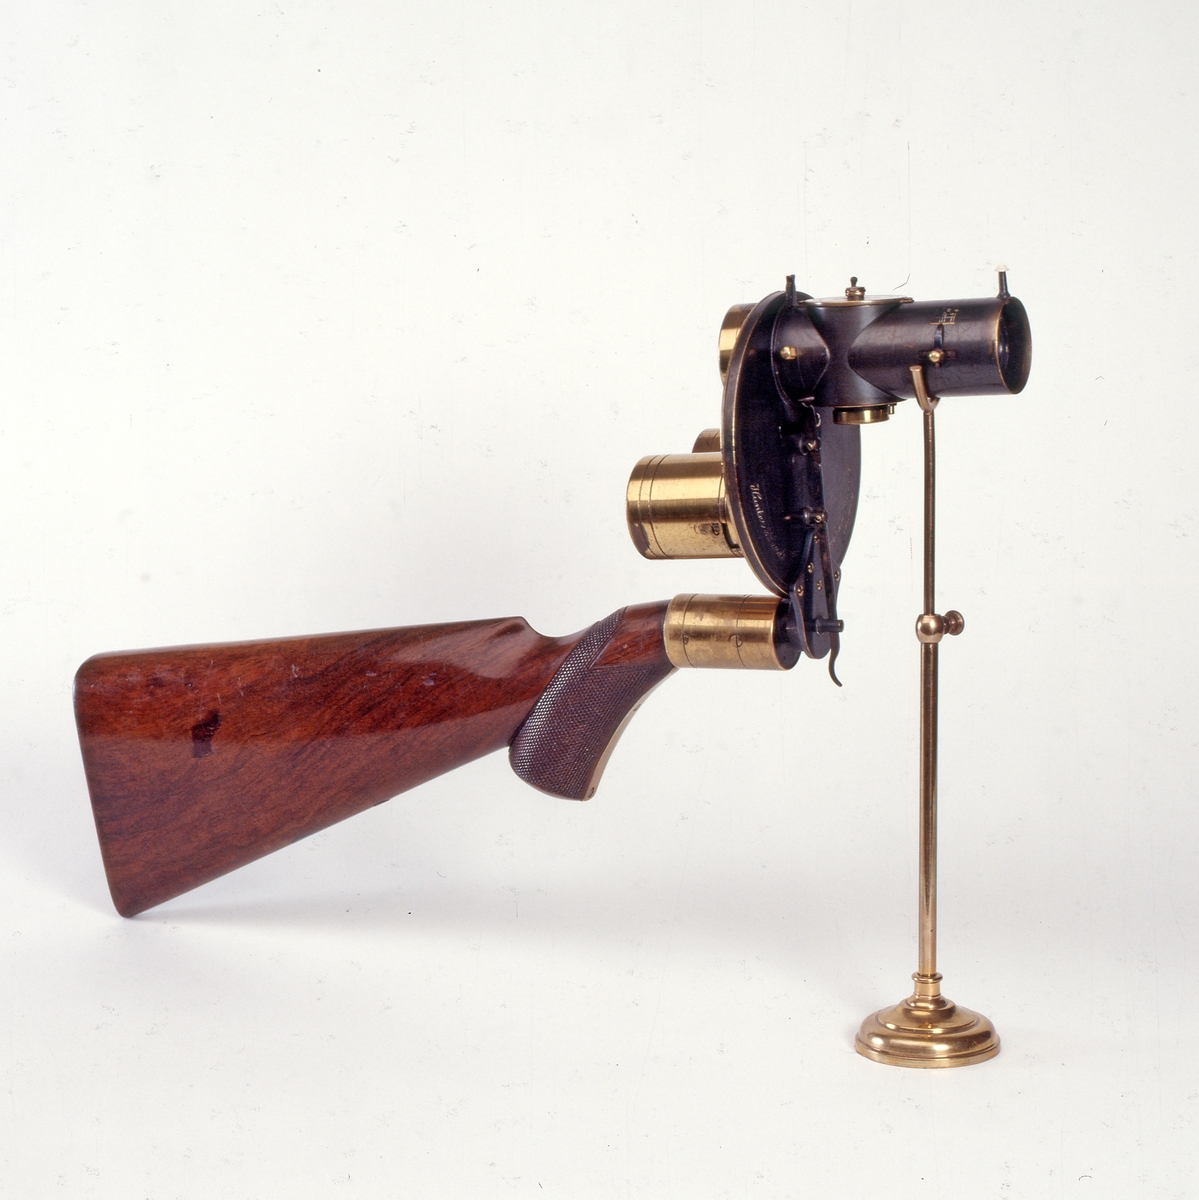 Tørrplatekamera formet som et gevær produsert av Londonbaserte Hunter & Sands i 1883. 
Kameraet holdes og siktes som et gevær. Det er utstyrt med to lagringssylindere for oppbevaring av glassplatene (før og etter eksponering). Platestørrelsen er på 1 ½” i diameter.    
Dette kameraet er et eksempel på et håndholdt kamera. Da tørrplatene kom i 1878, ble eksponeringstidene så korte at man kunne ta bilder med håndholdte kameraer og av ting i bevegelse. Tørrplatene kunne også lagres i magasinet. I dette kameraet er det plass til 18 plater. Firmaet skiftet navn til Sands and Hunter og kom med en ny modell i 1885.